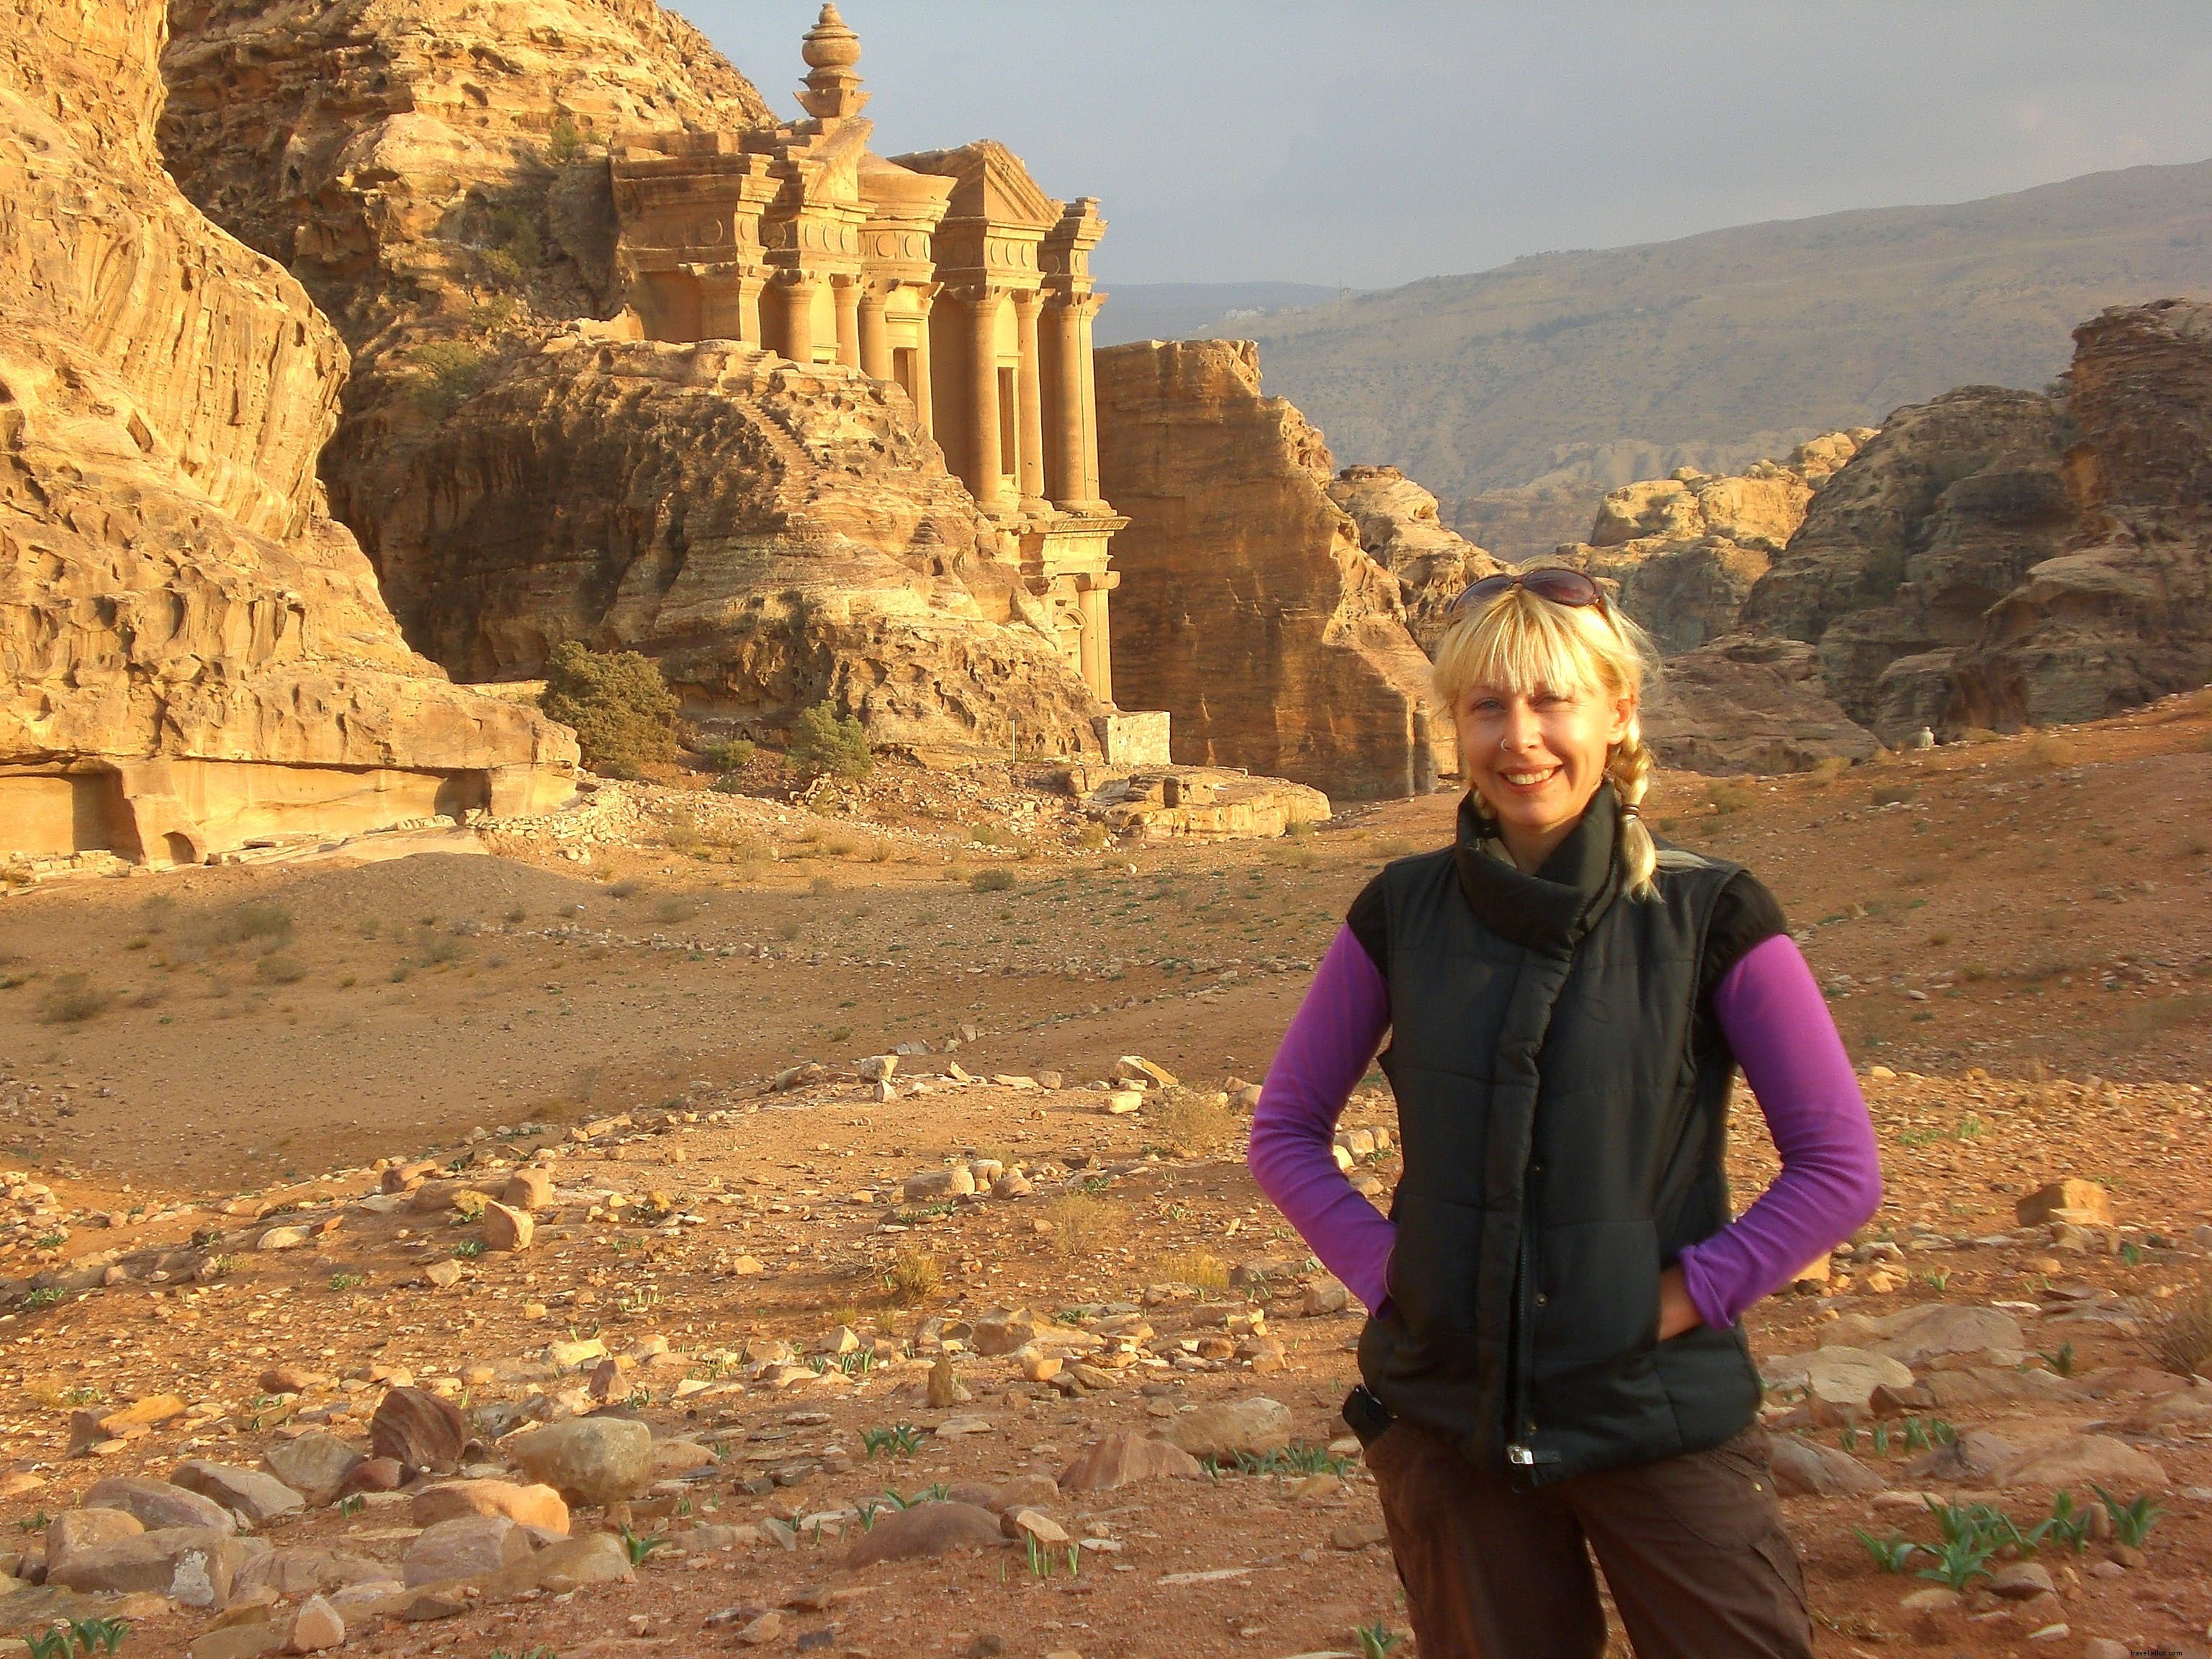 Viagem Solo Feminina:O que aprendi viajando sozinha no Oriente Médio 